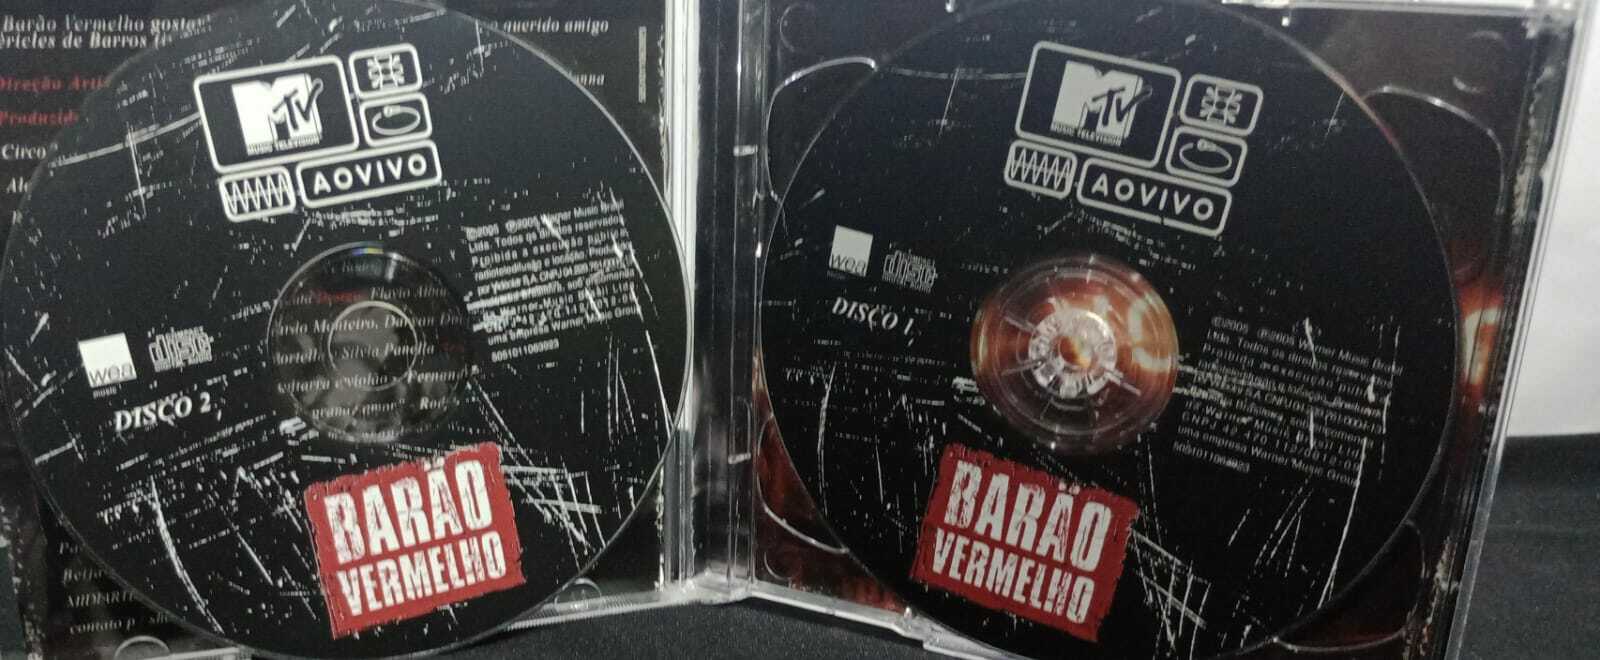 CD - Barão Vermelho - MTV Ao Vivo (Duplo)